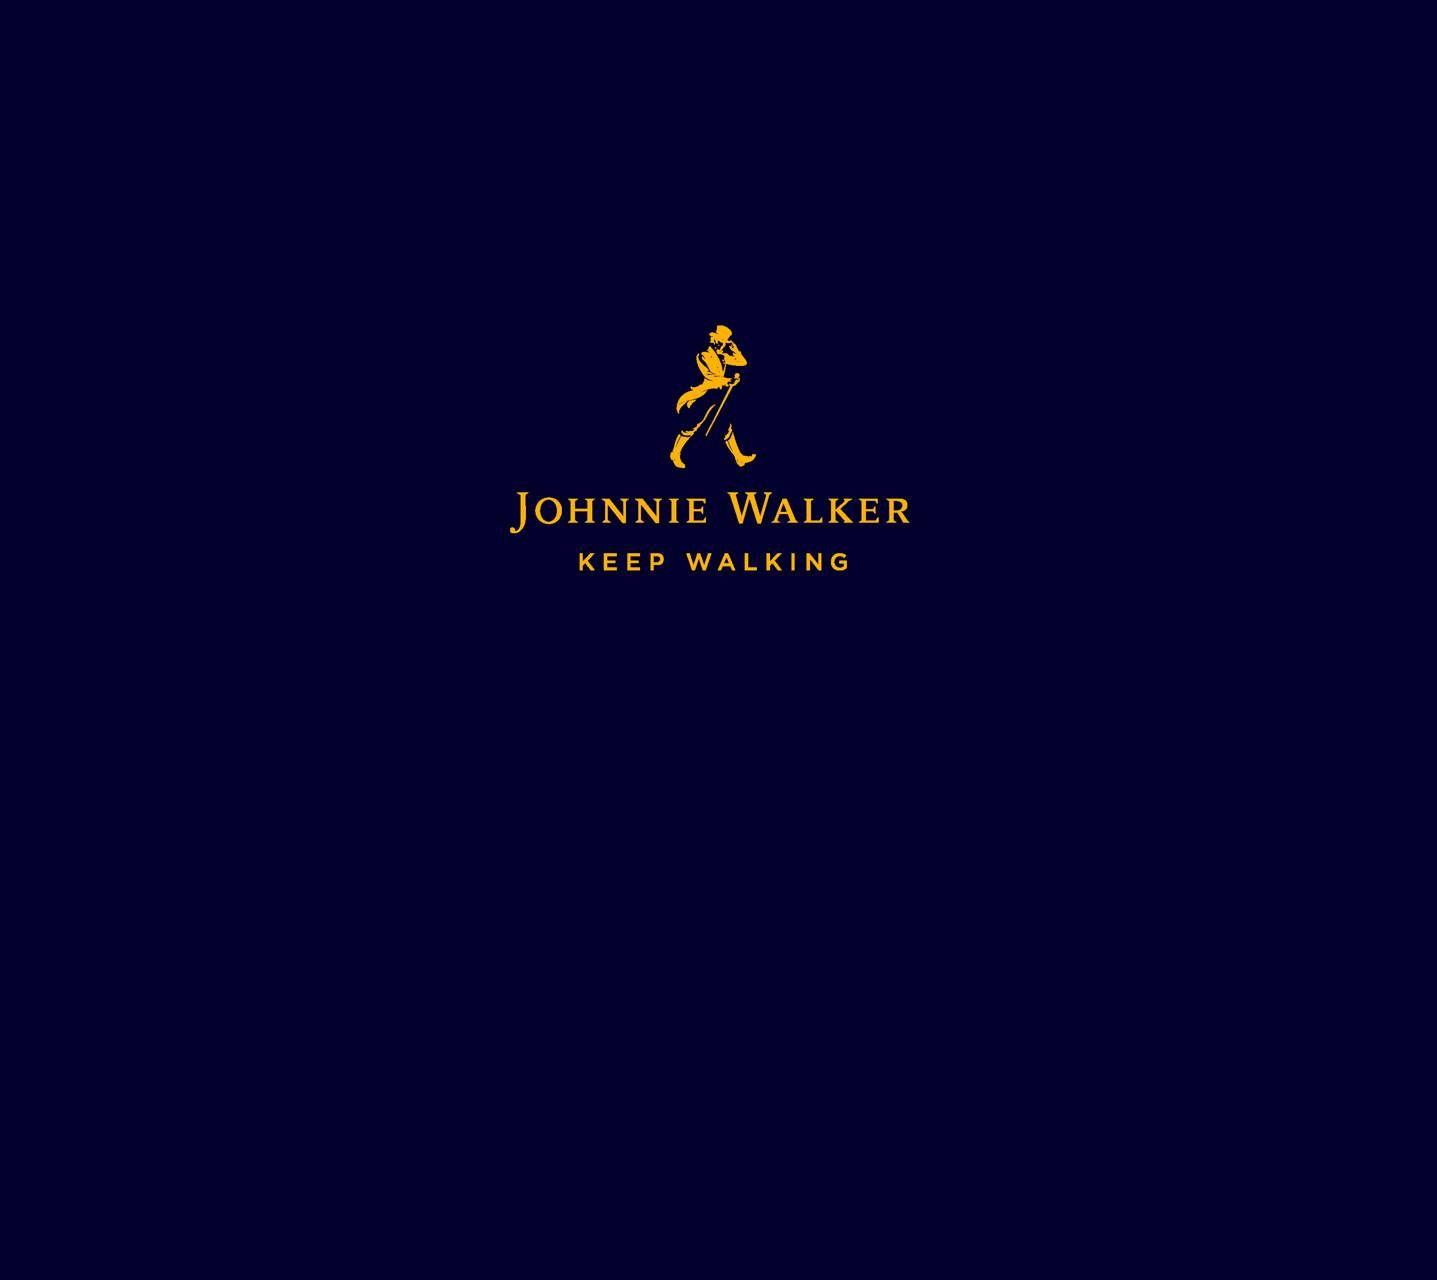 Johnnie Walker Wallpapers - Top Free Johnnie Walker ...